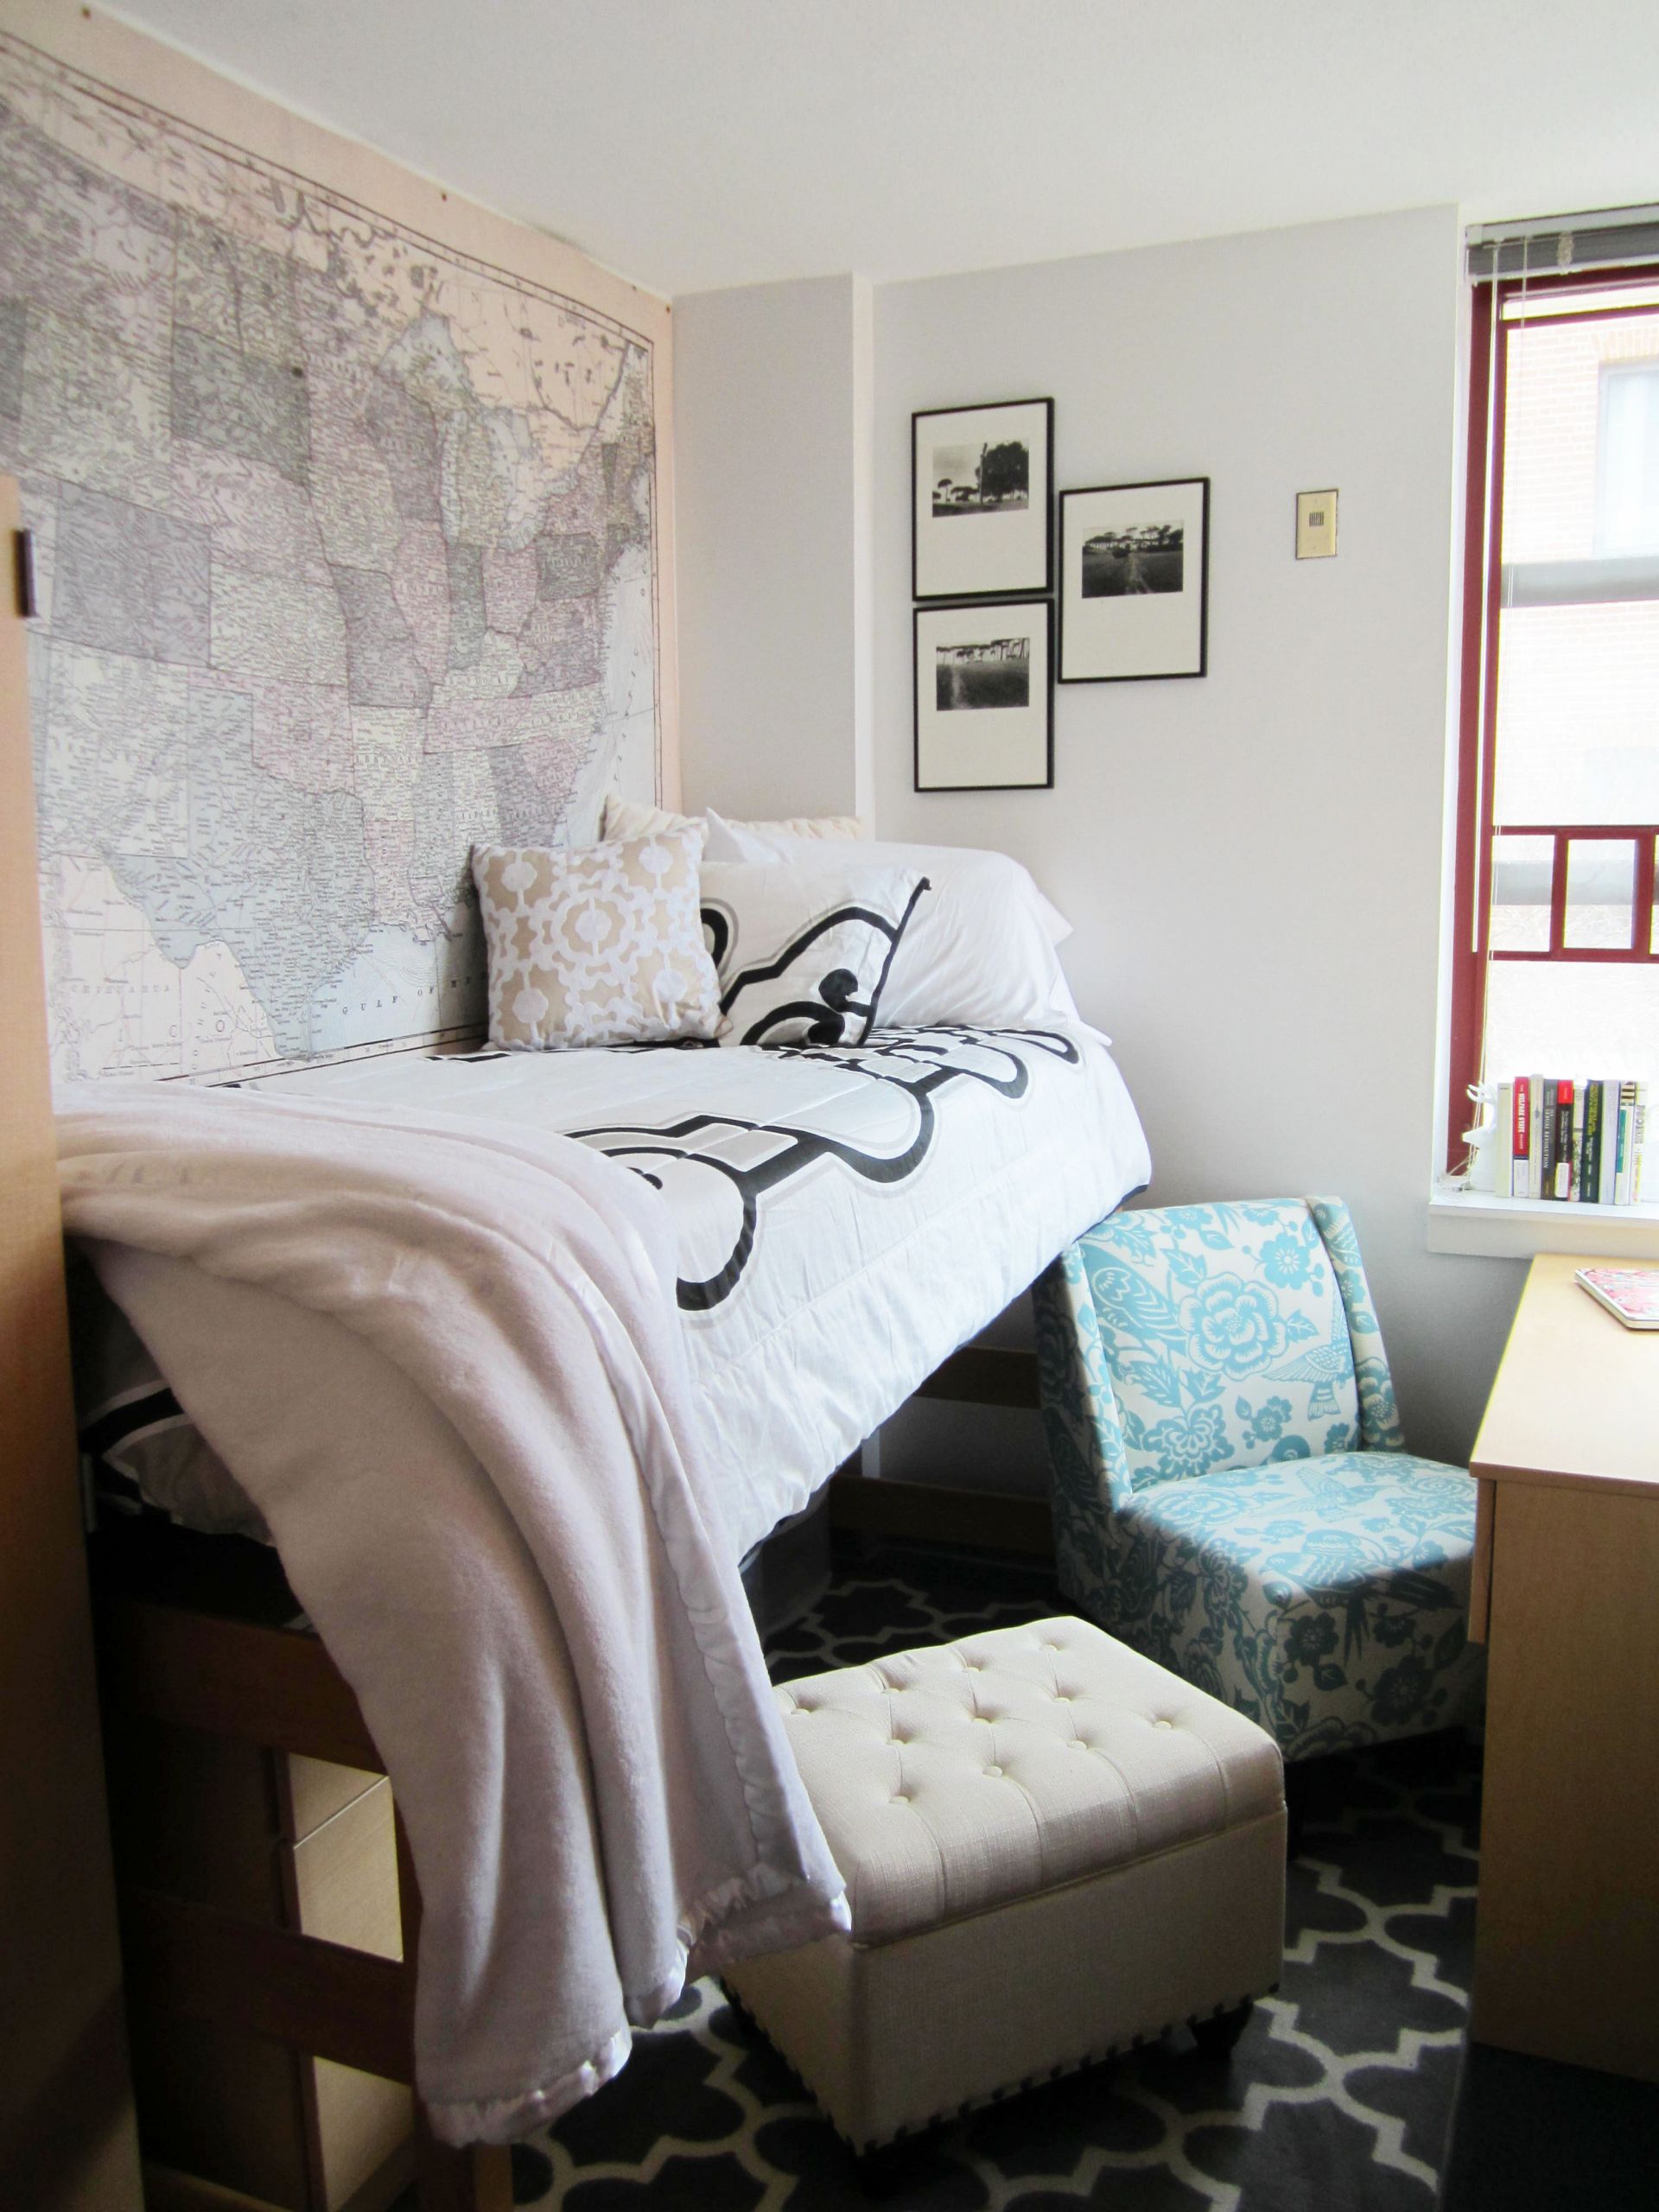 DIY College Apartment Decorating
 College 2014 Best Dorm Room Decor Ideas Storage & DIY